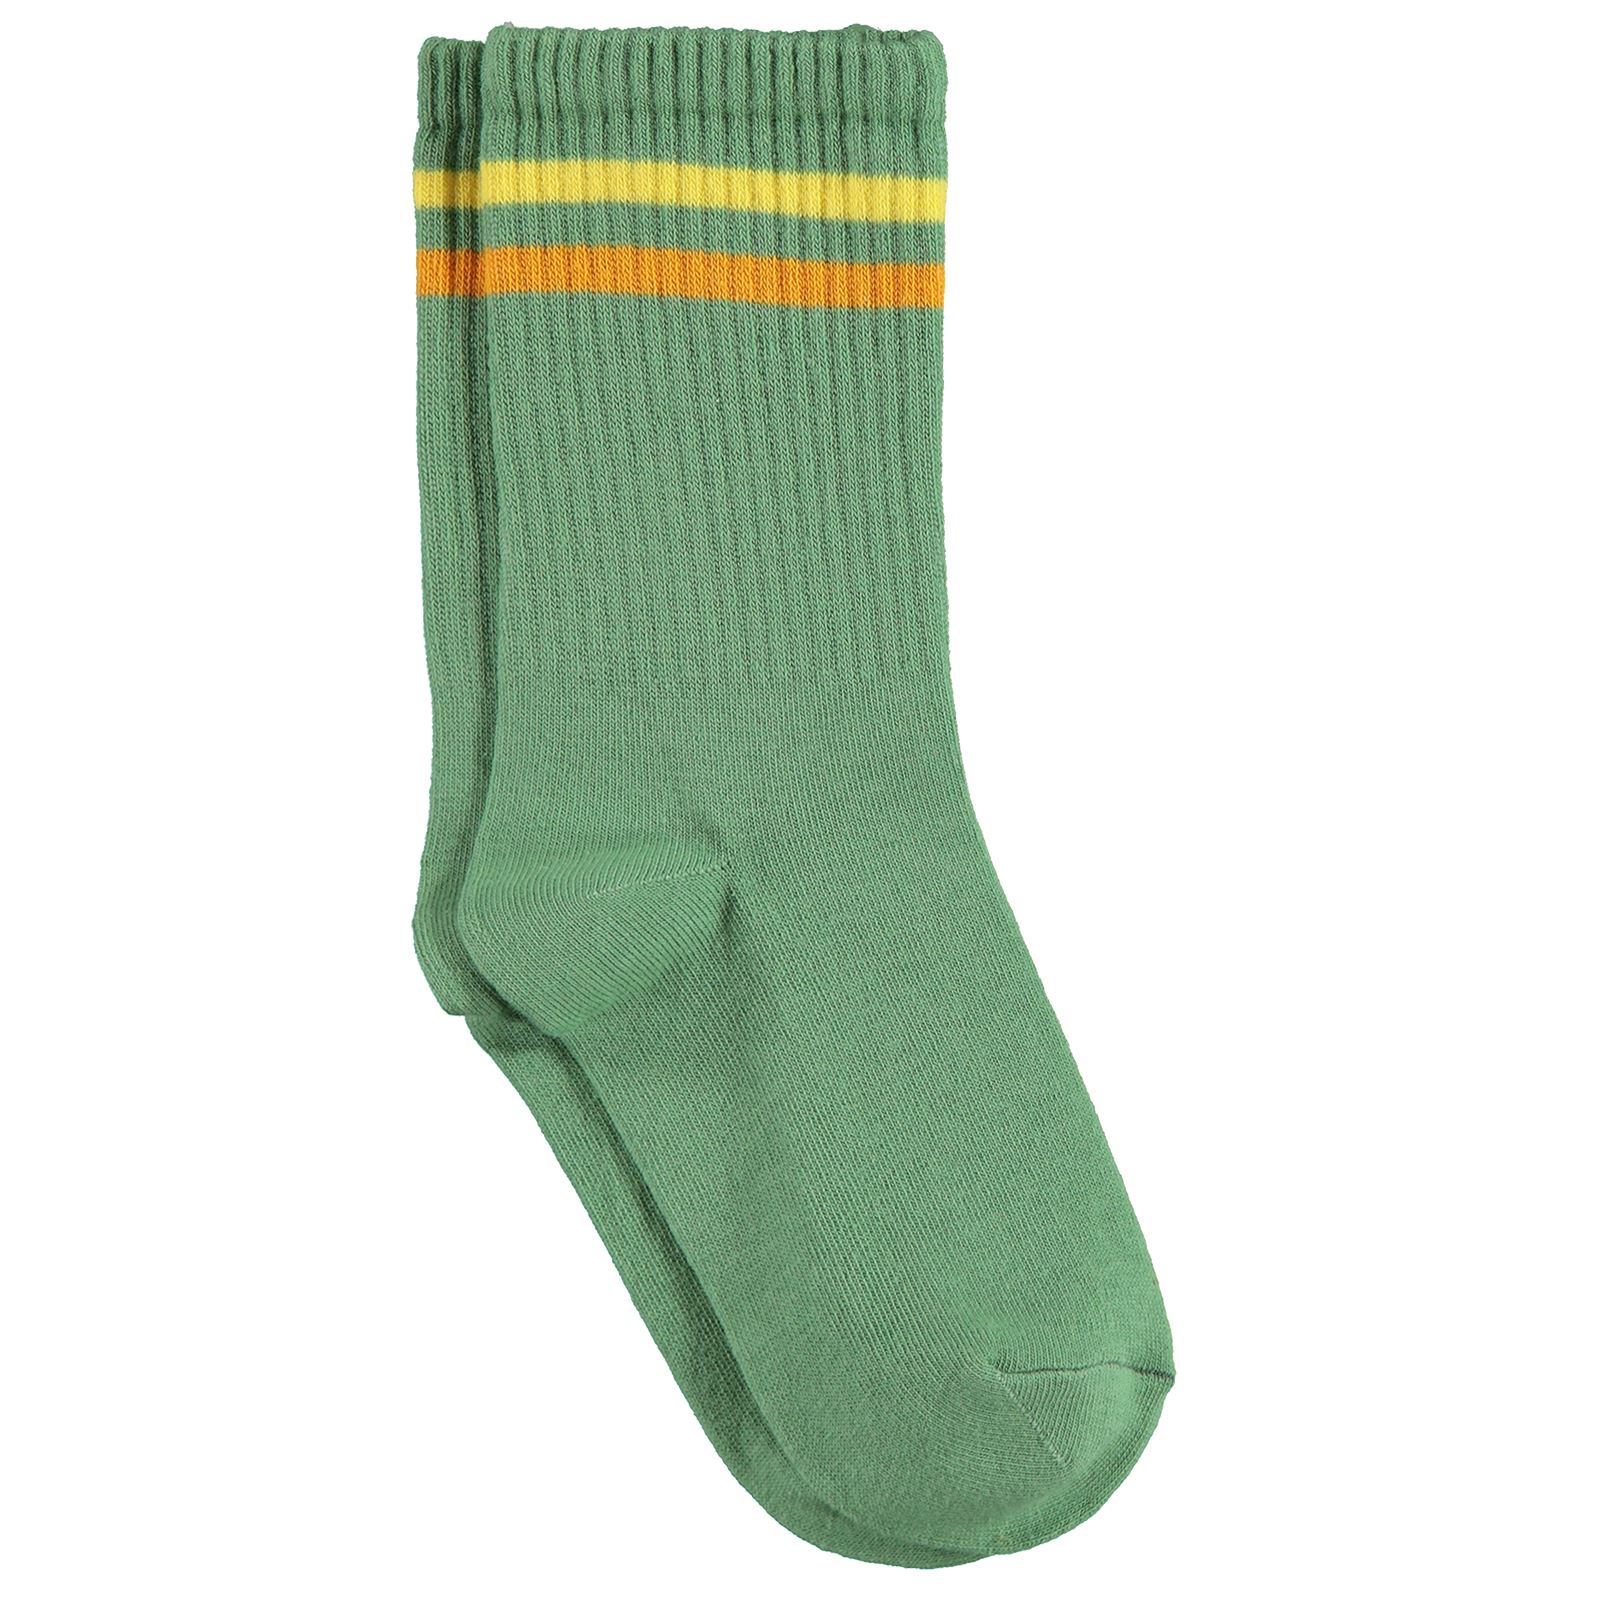 Gzn Kadın Soket Çorap 36-40 Numara Yeşil